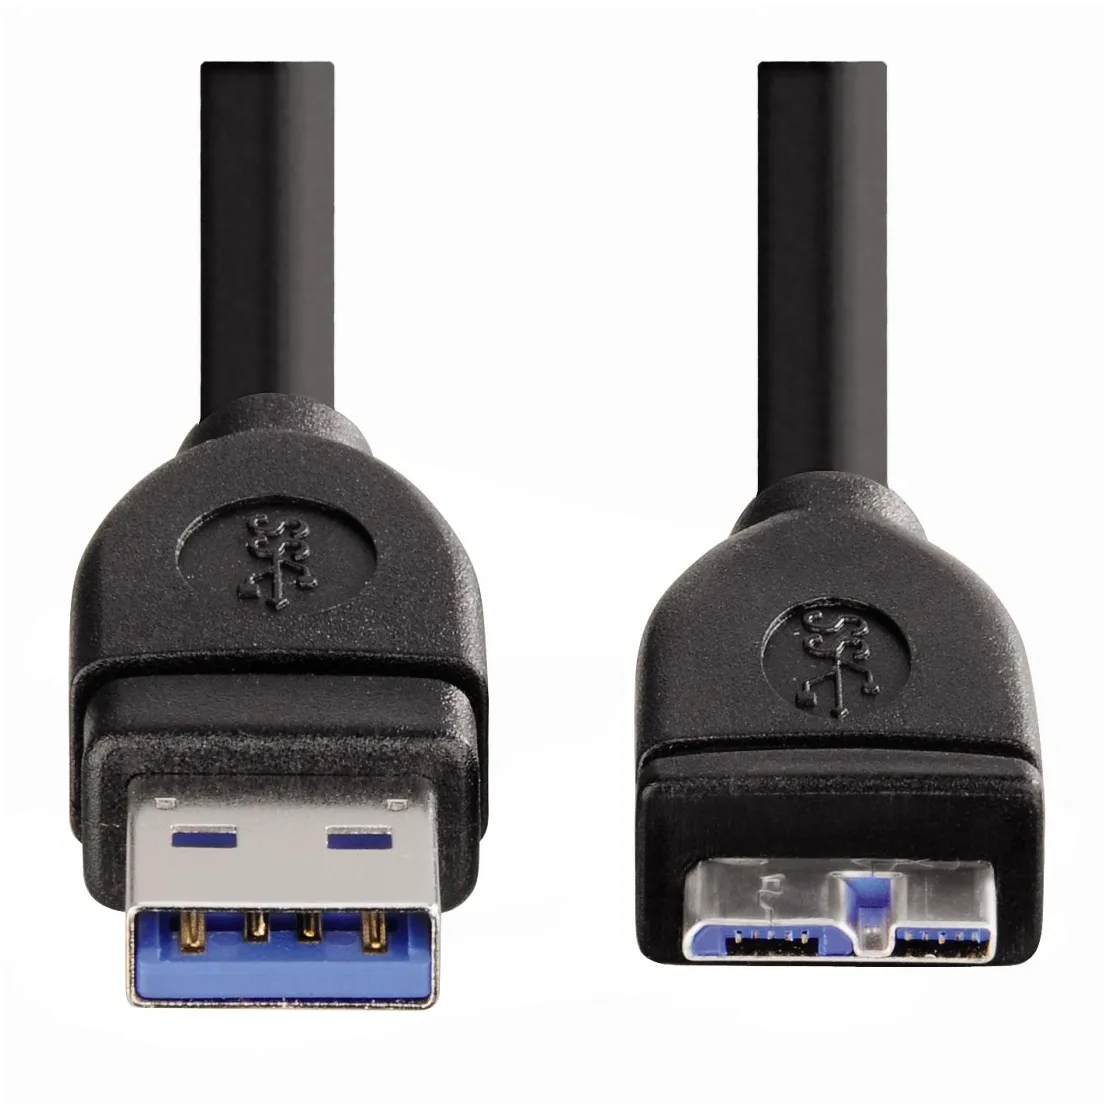 Hama USB-IT-kabel 3.0 USB-A naar A-micro-B 0,75 meter